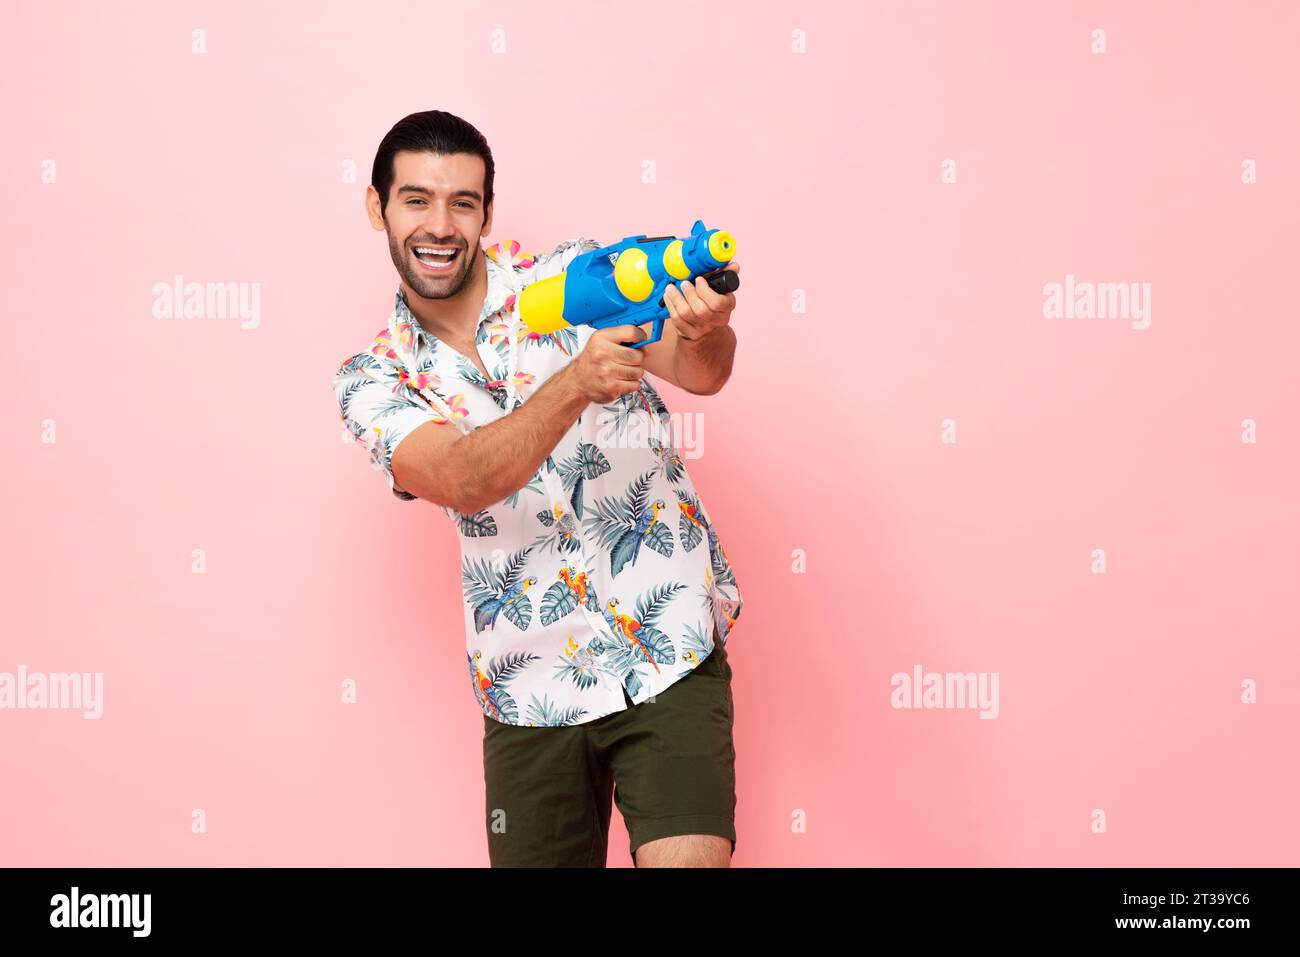 Fröhlich lächelnder junger kaukasischer Touristenmann, der mit Wasserpistole im rosa Studiohintergrund für das Songkran Festival Konzept in Thailand und Südosten spielt Stockfoto